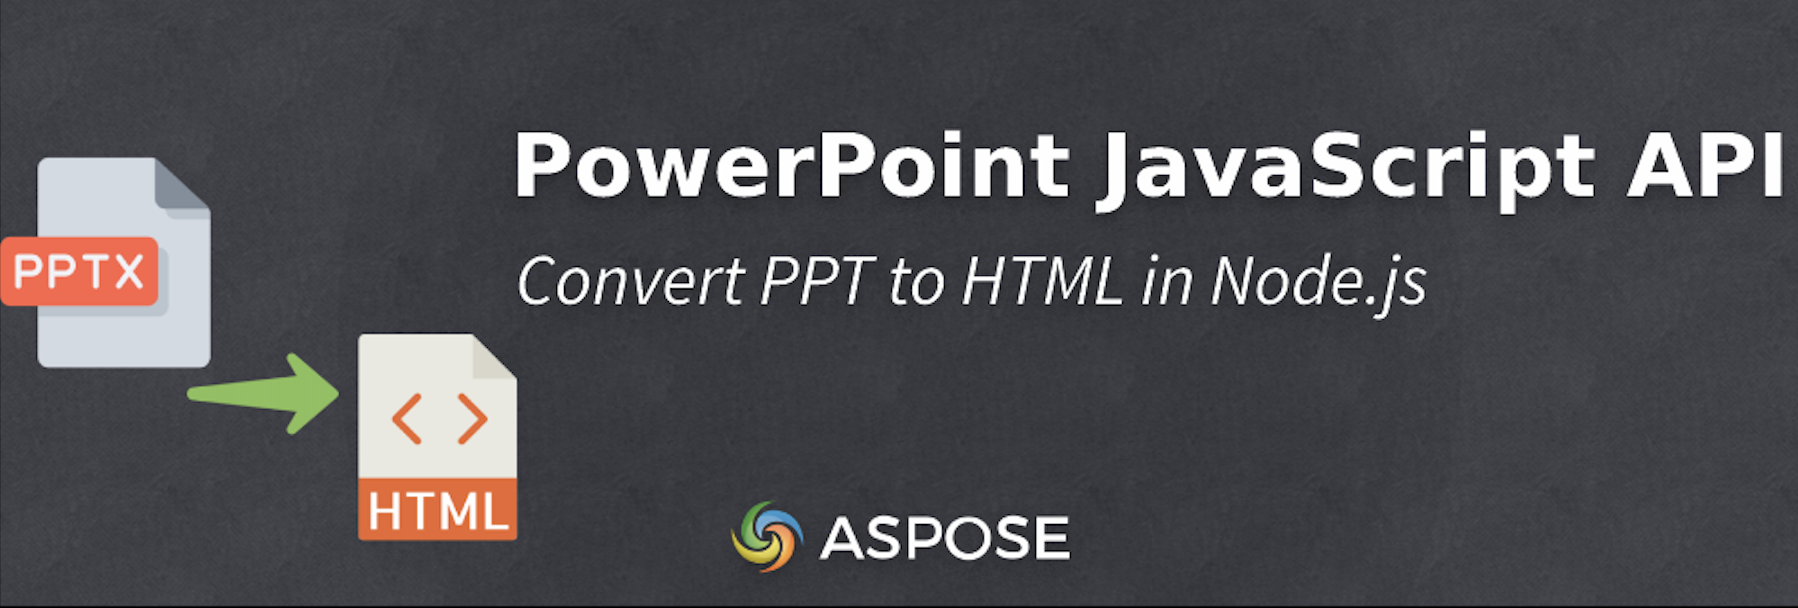 Node.js에서 PPT를 HTML로 변환 - PowerPoint JavaScript API